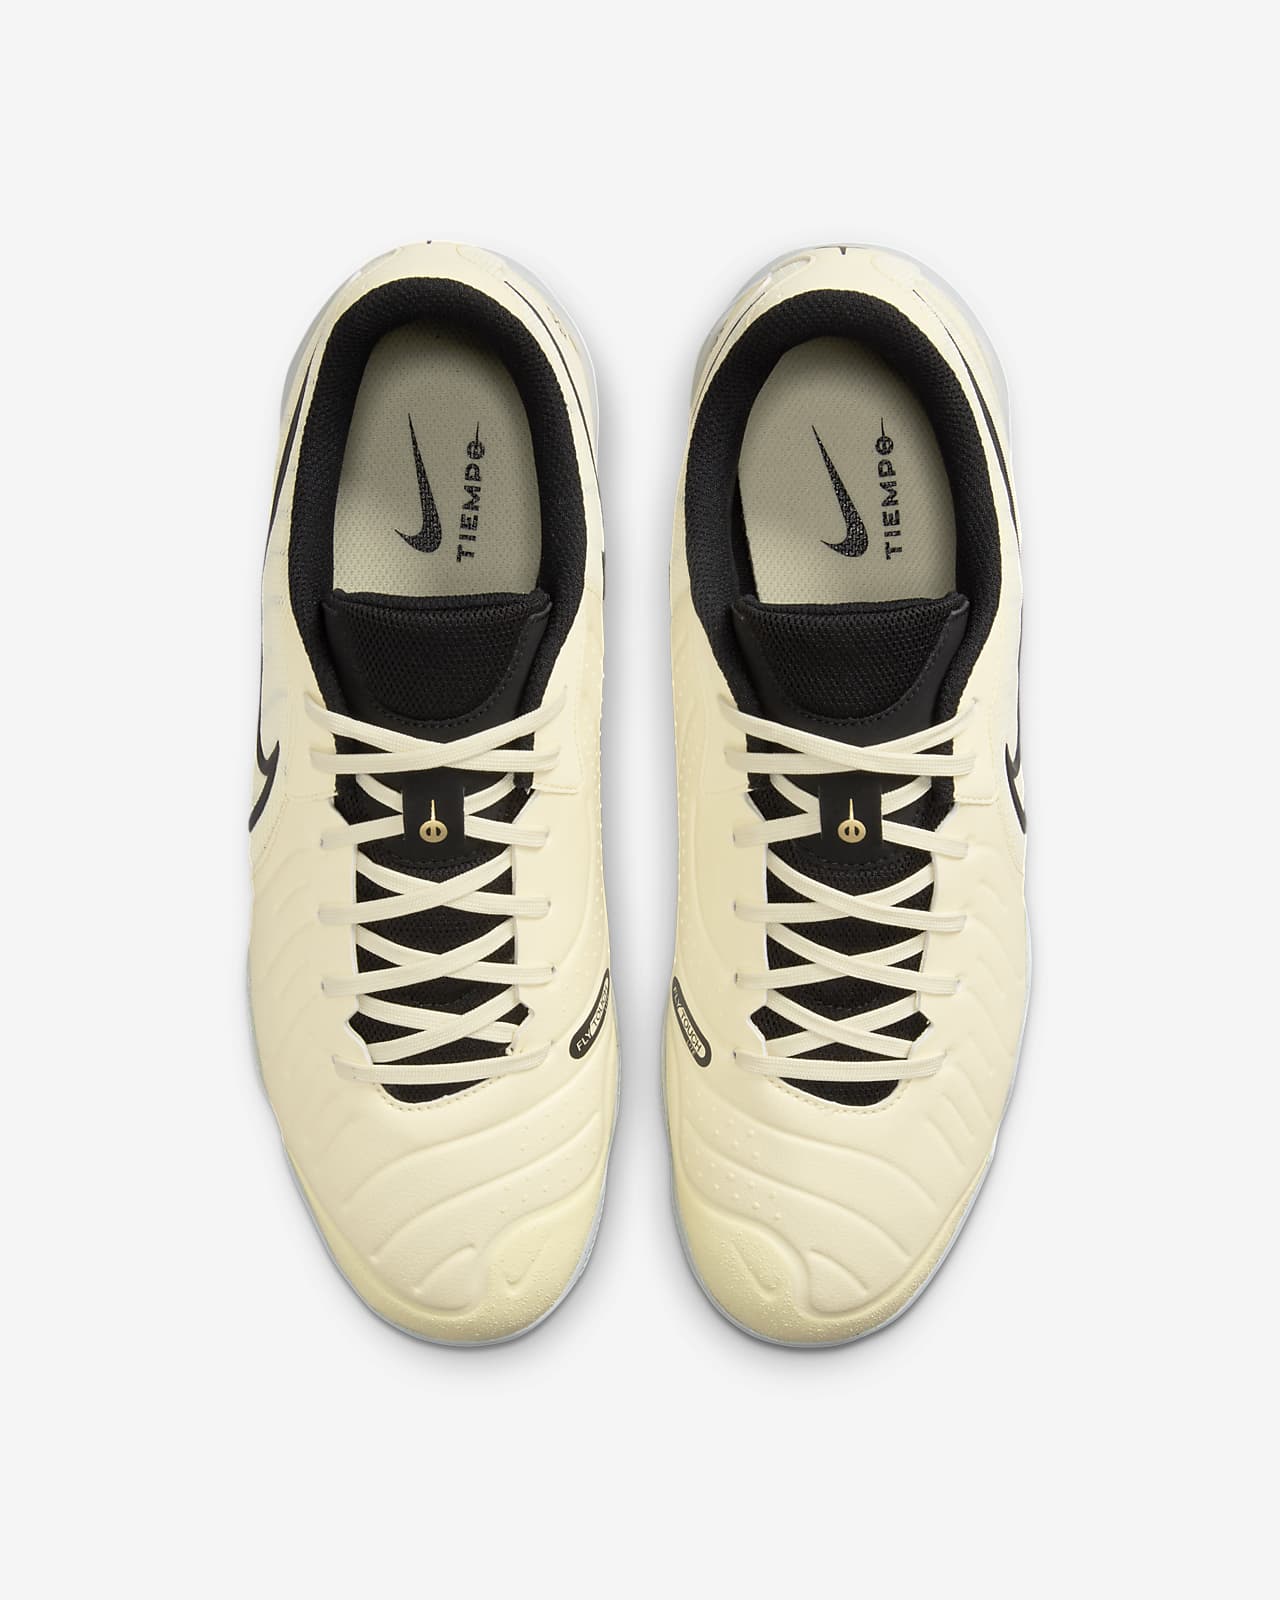 Tiempo Academy Nike Soccer Low-Top Legend 10 Shoes. Indoor/Court